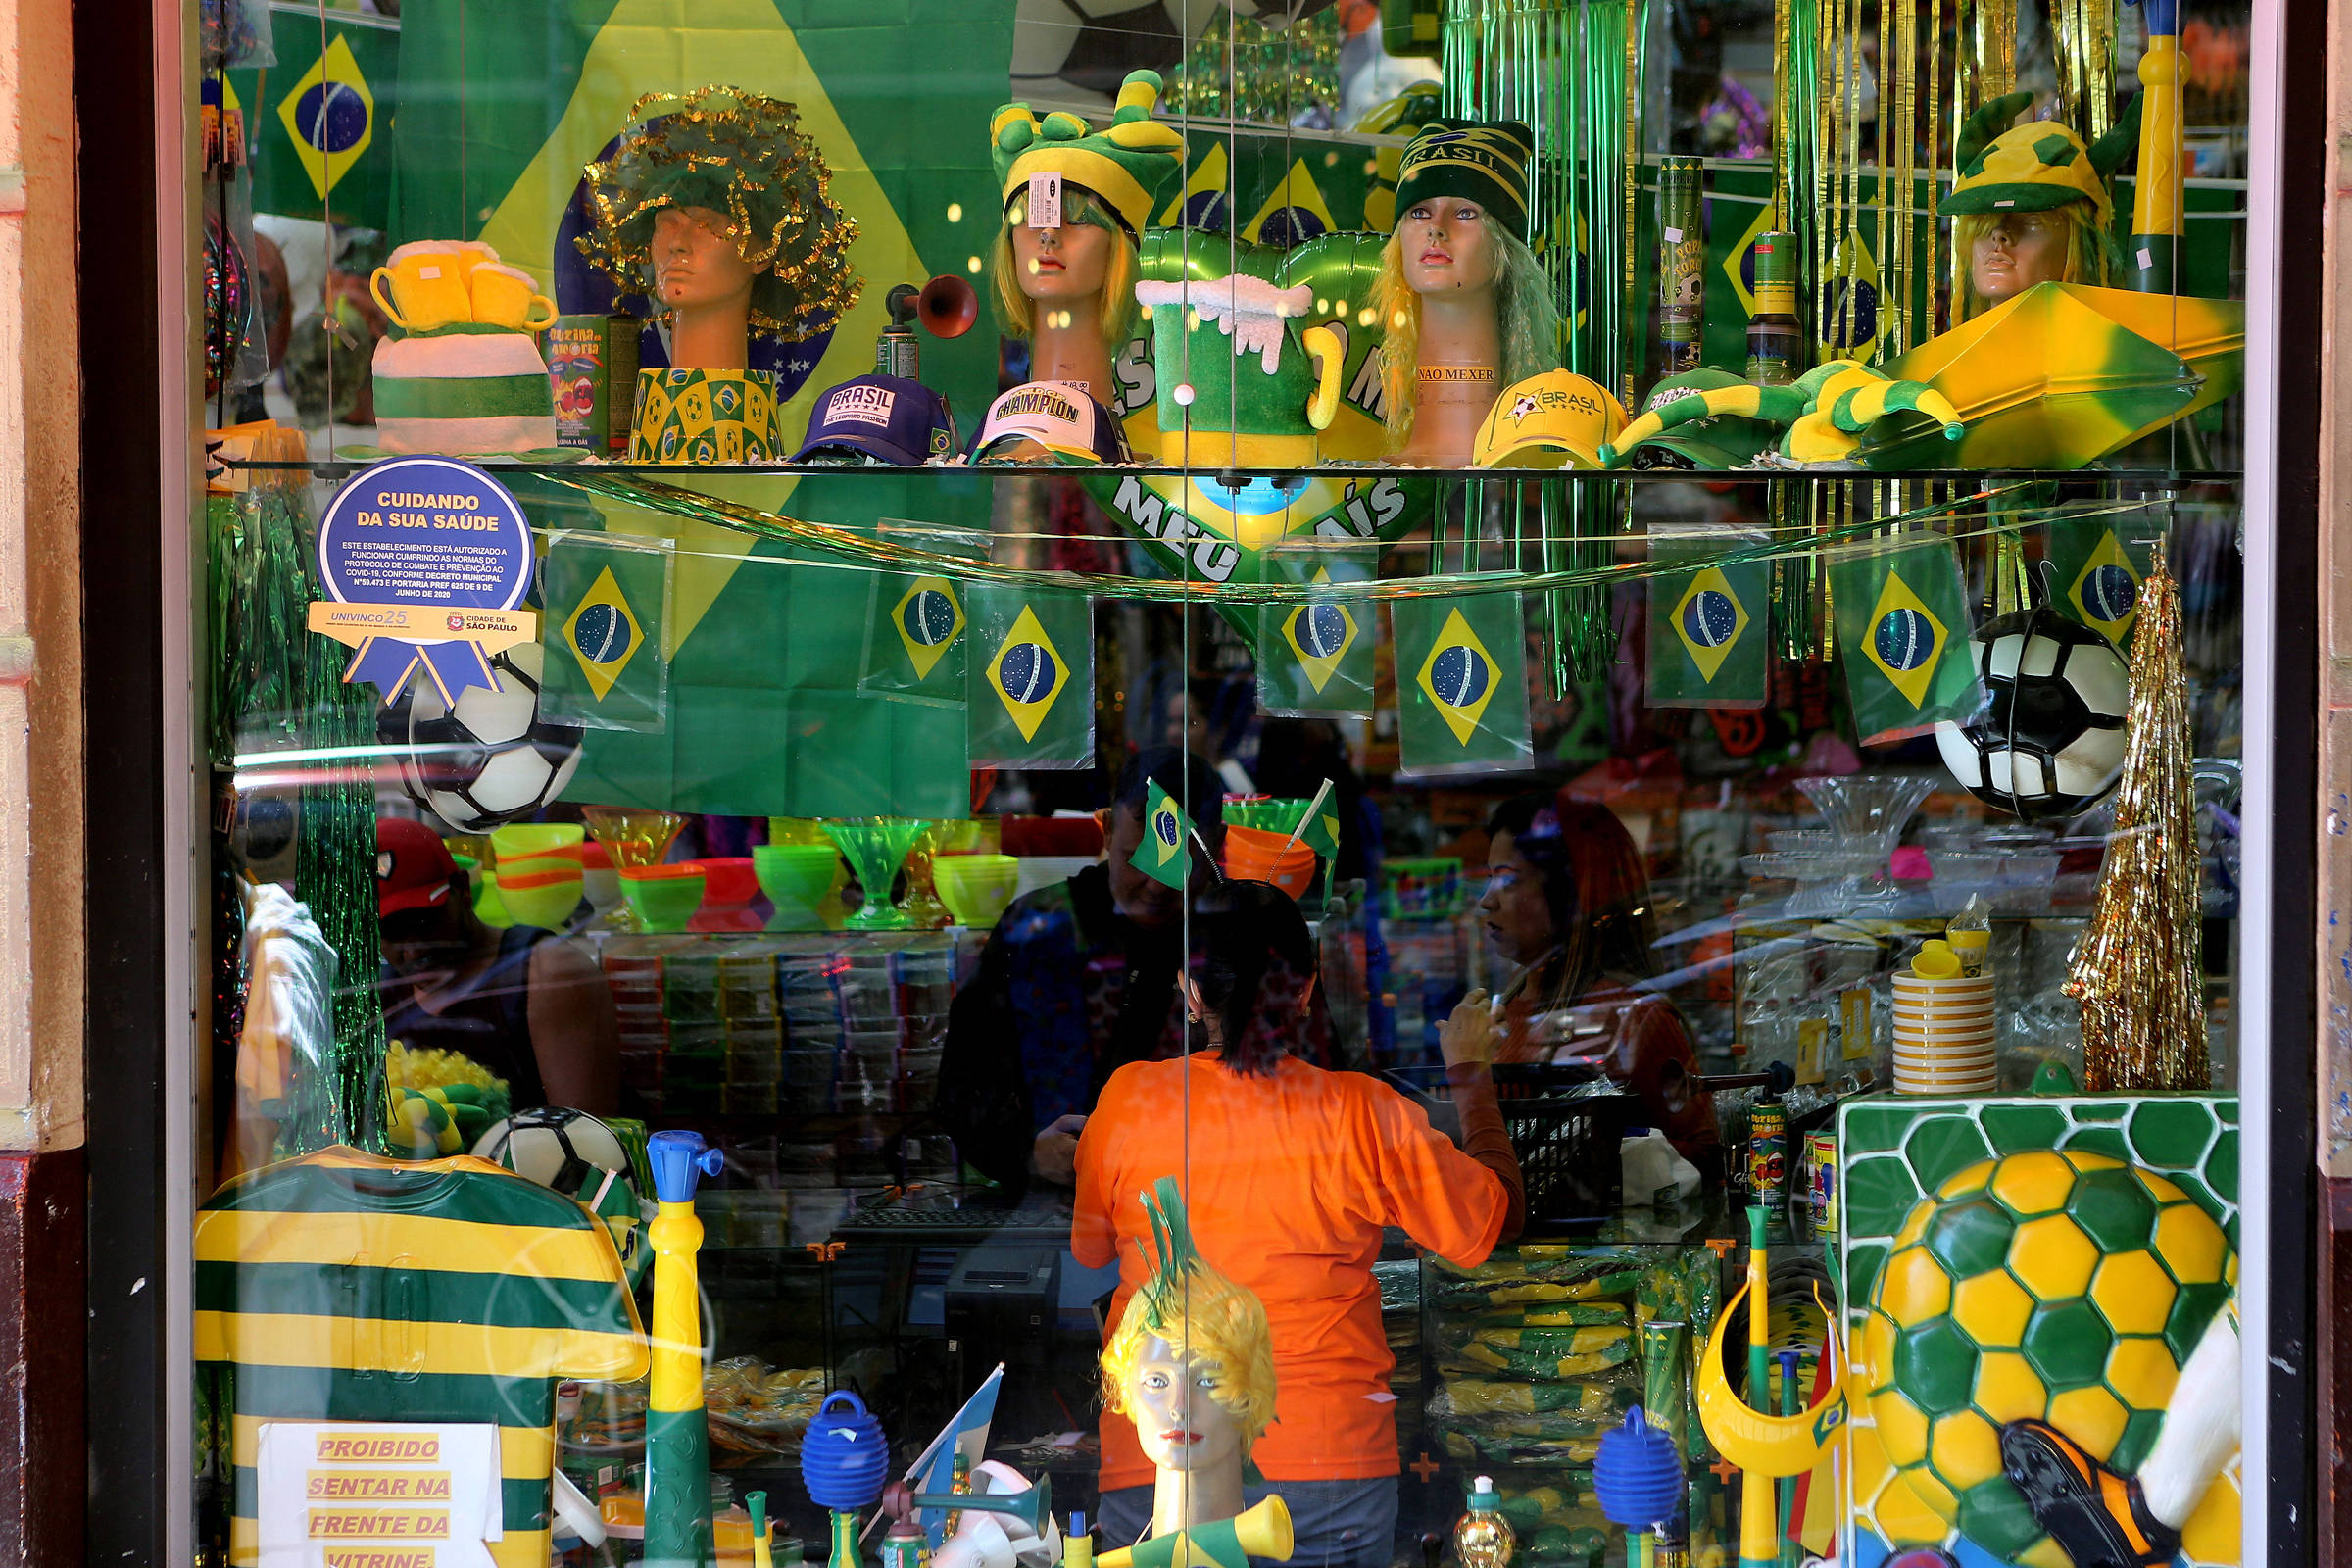 Trabalhador folga nos dias dos jogos do Brasil na Copa do Mundo de